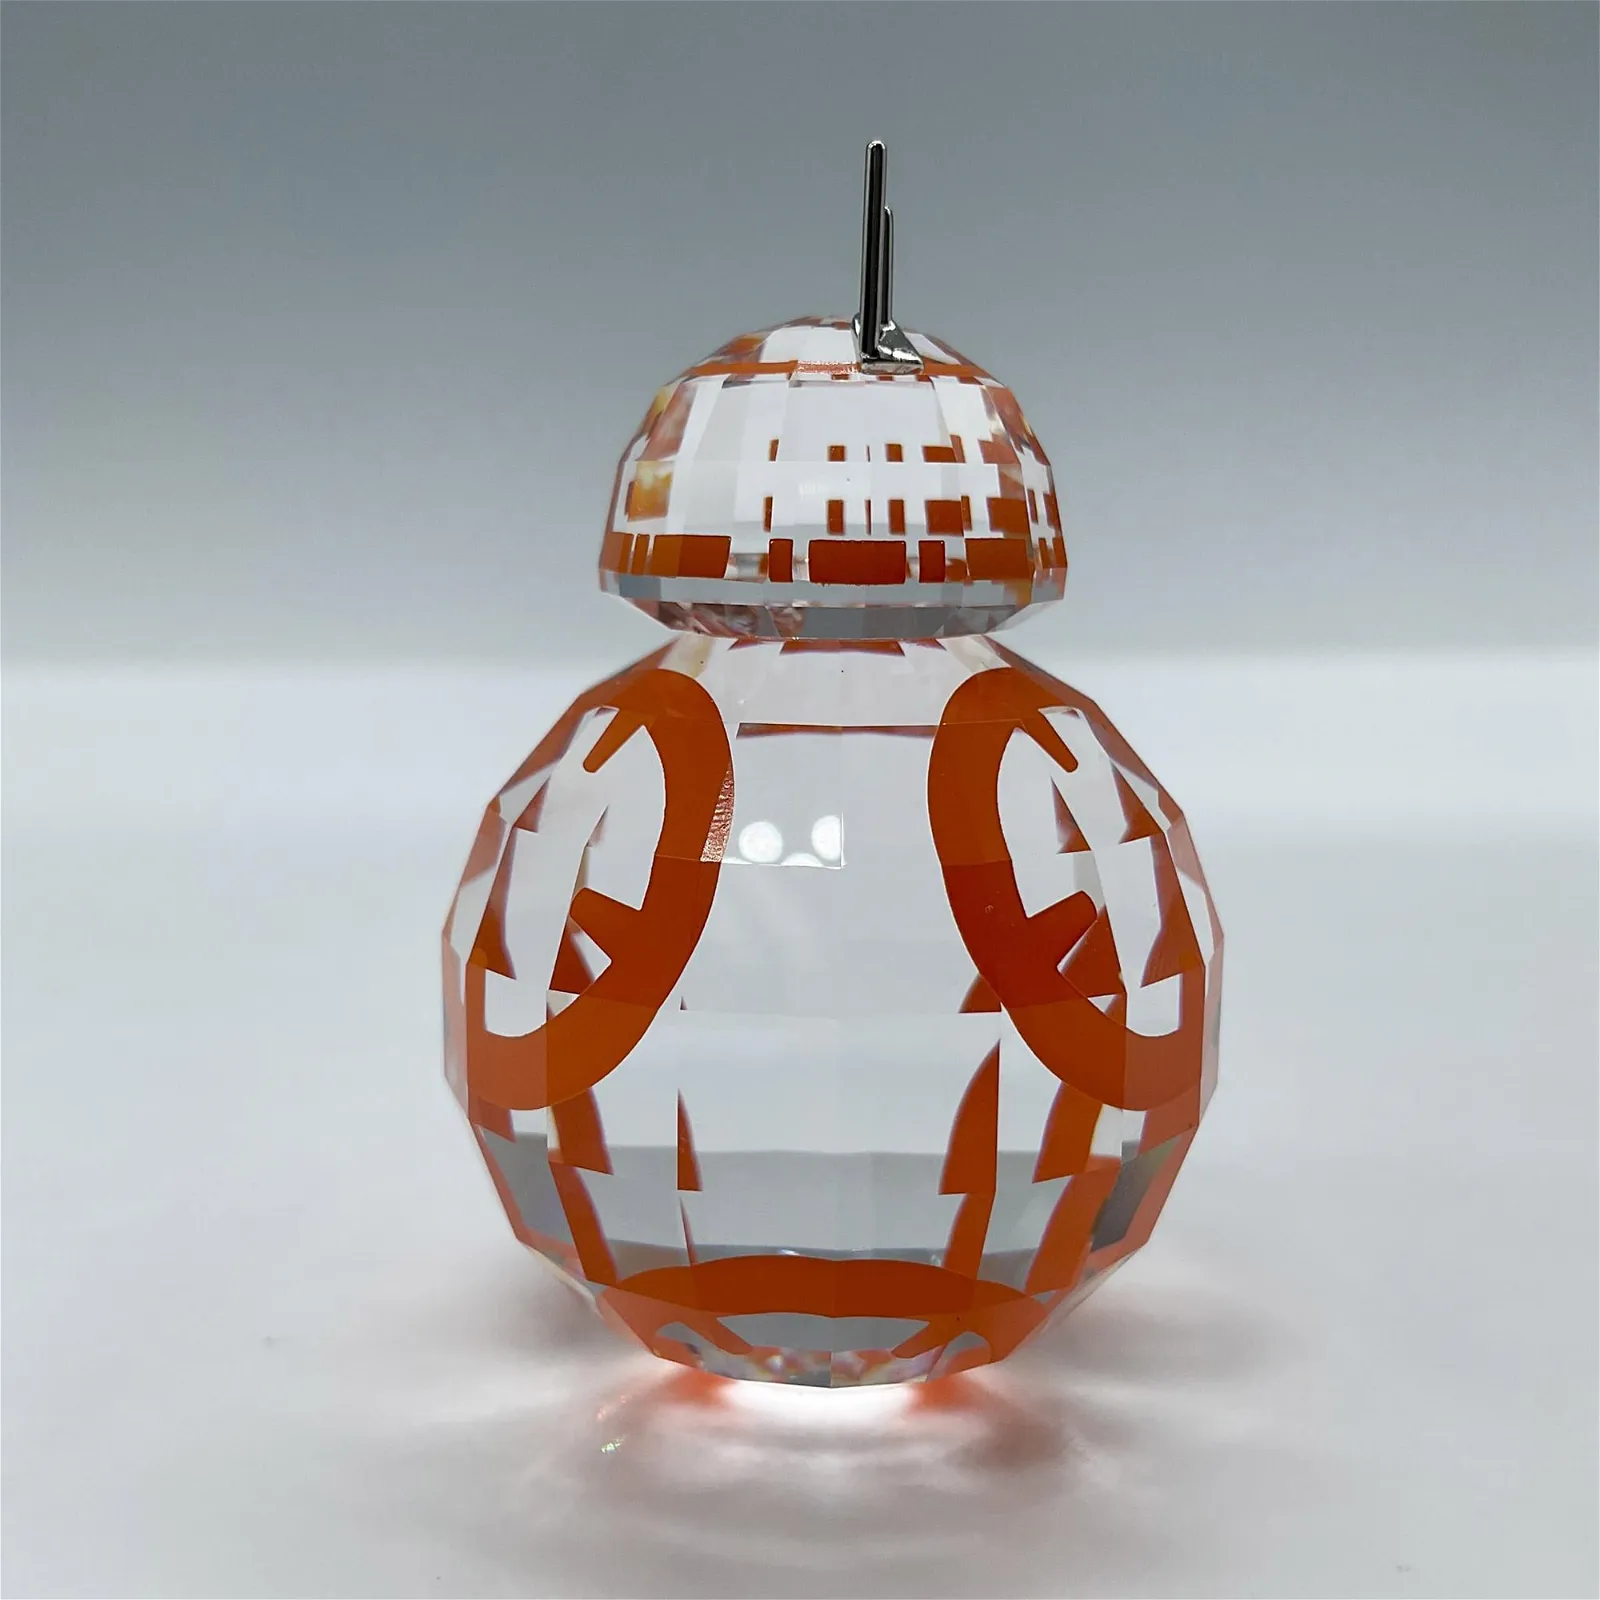 Rare Swarovski Crystal Figurine, Star Wars BB-8